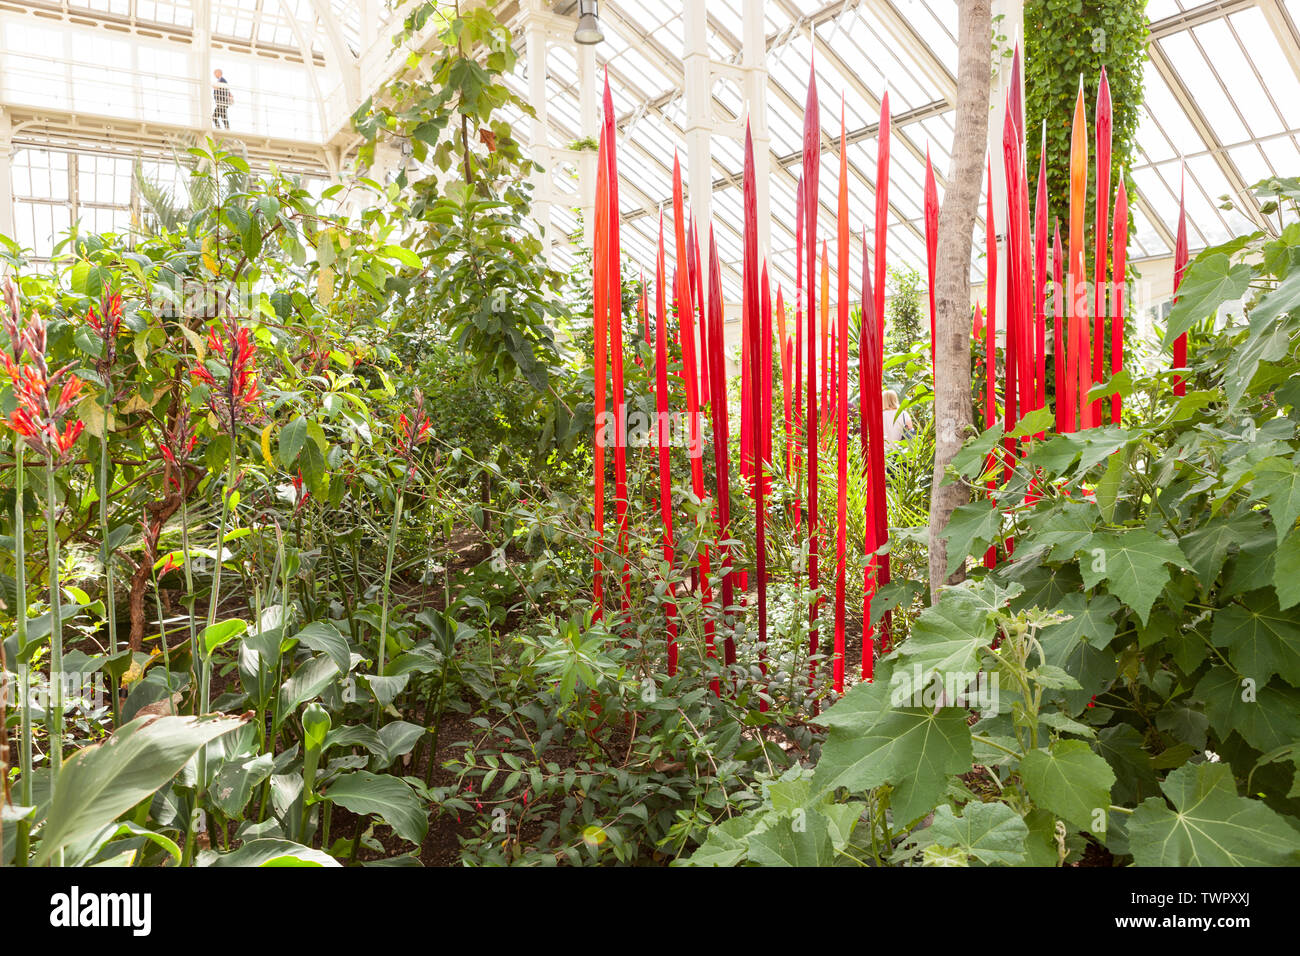 Roseaux rouge est une sculpture de verre artiste contemporaine USA Dale Chihuly, installé dans la maison tempérée à Kew Gardens, Richmond, London, UK. Banque D'Images